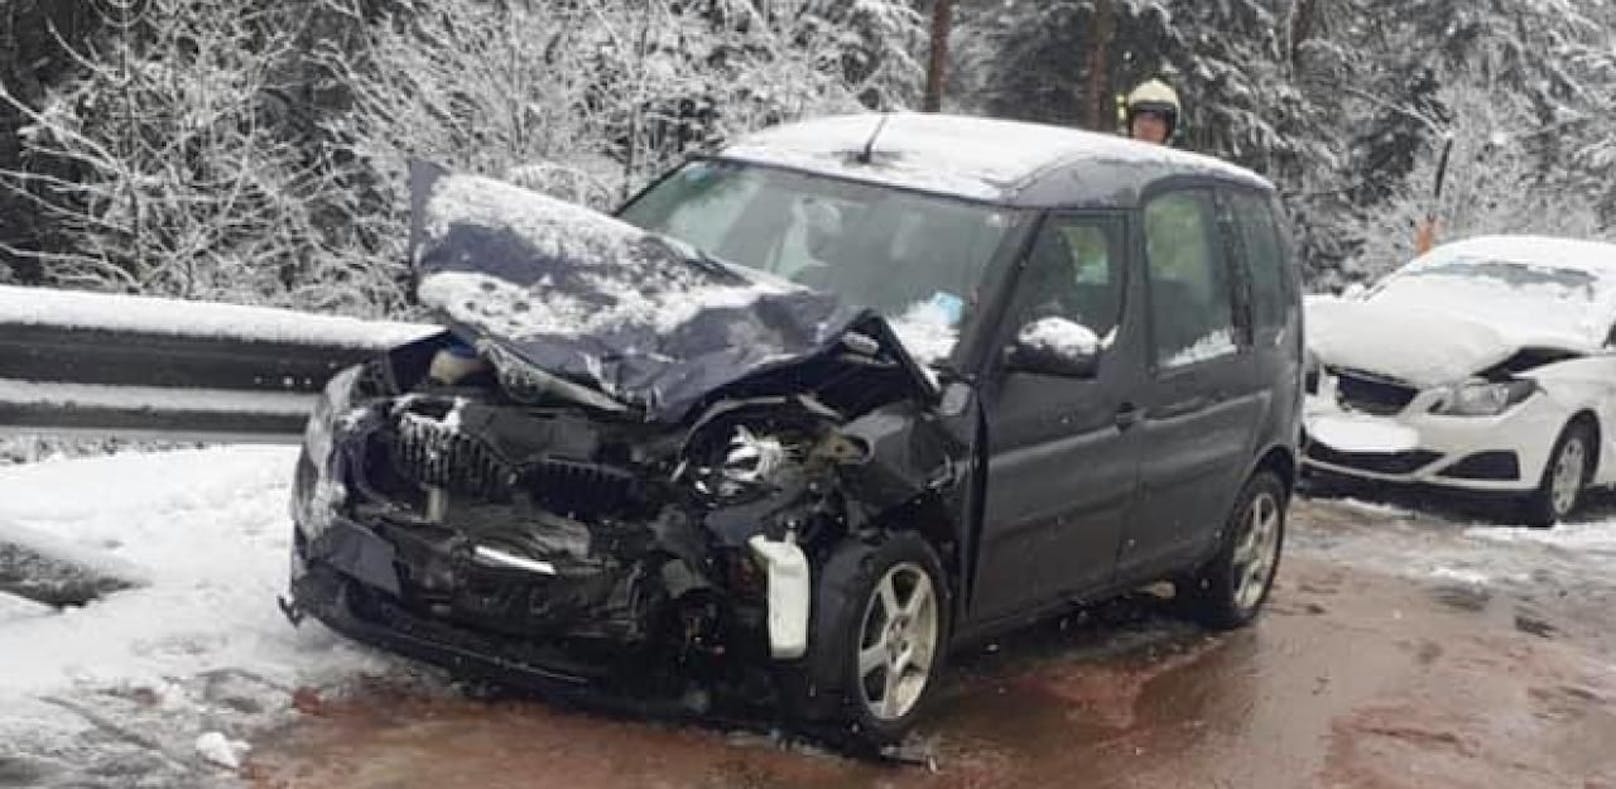 Dienstagmittag kam es in Elmen (Bezirk Reutte) zu einem schweren Verkehrsunfall, nachdem eine 31-jährige Autolenkerin aus Deutschland in den Gegenverkehr geriet.